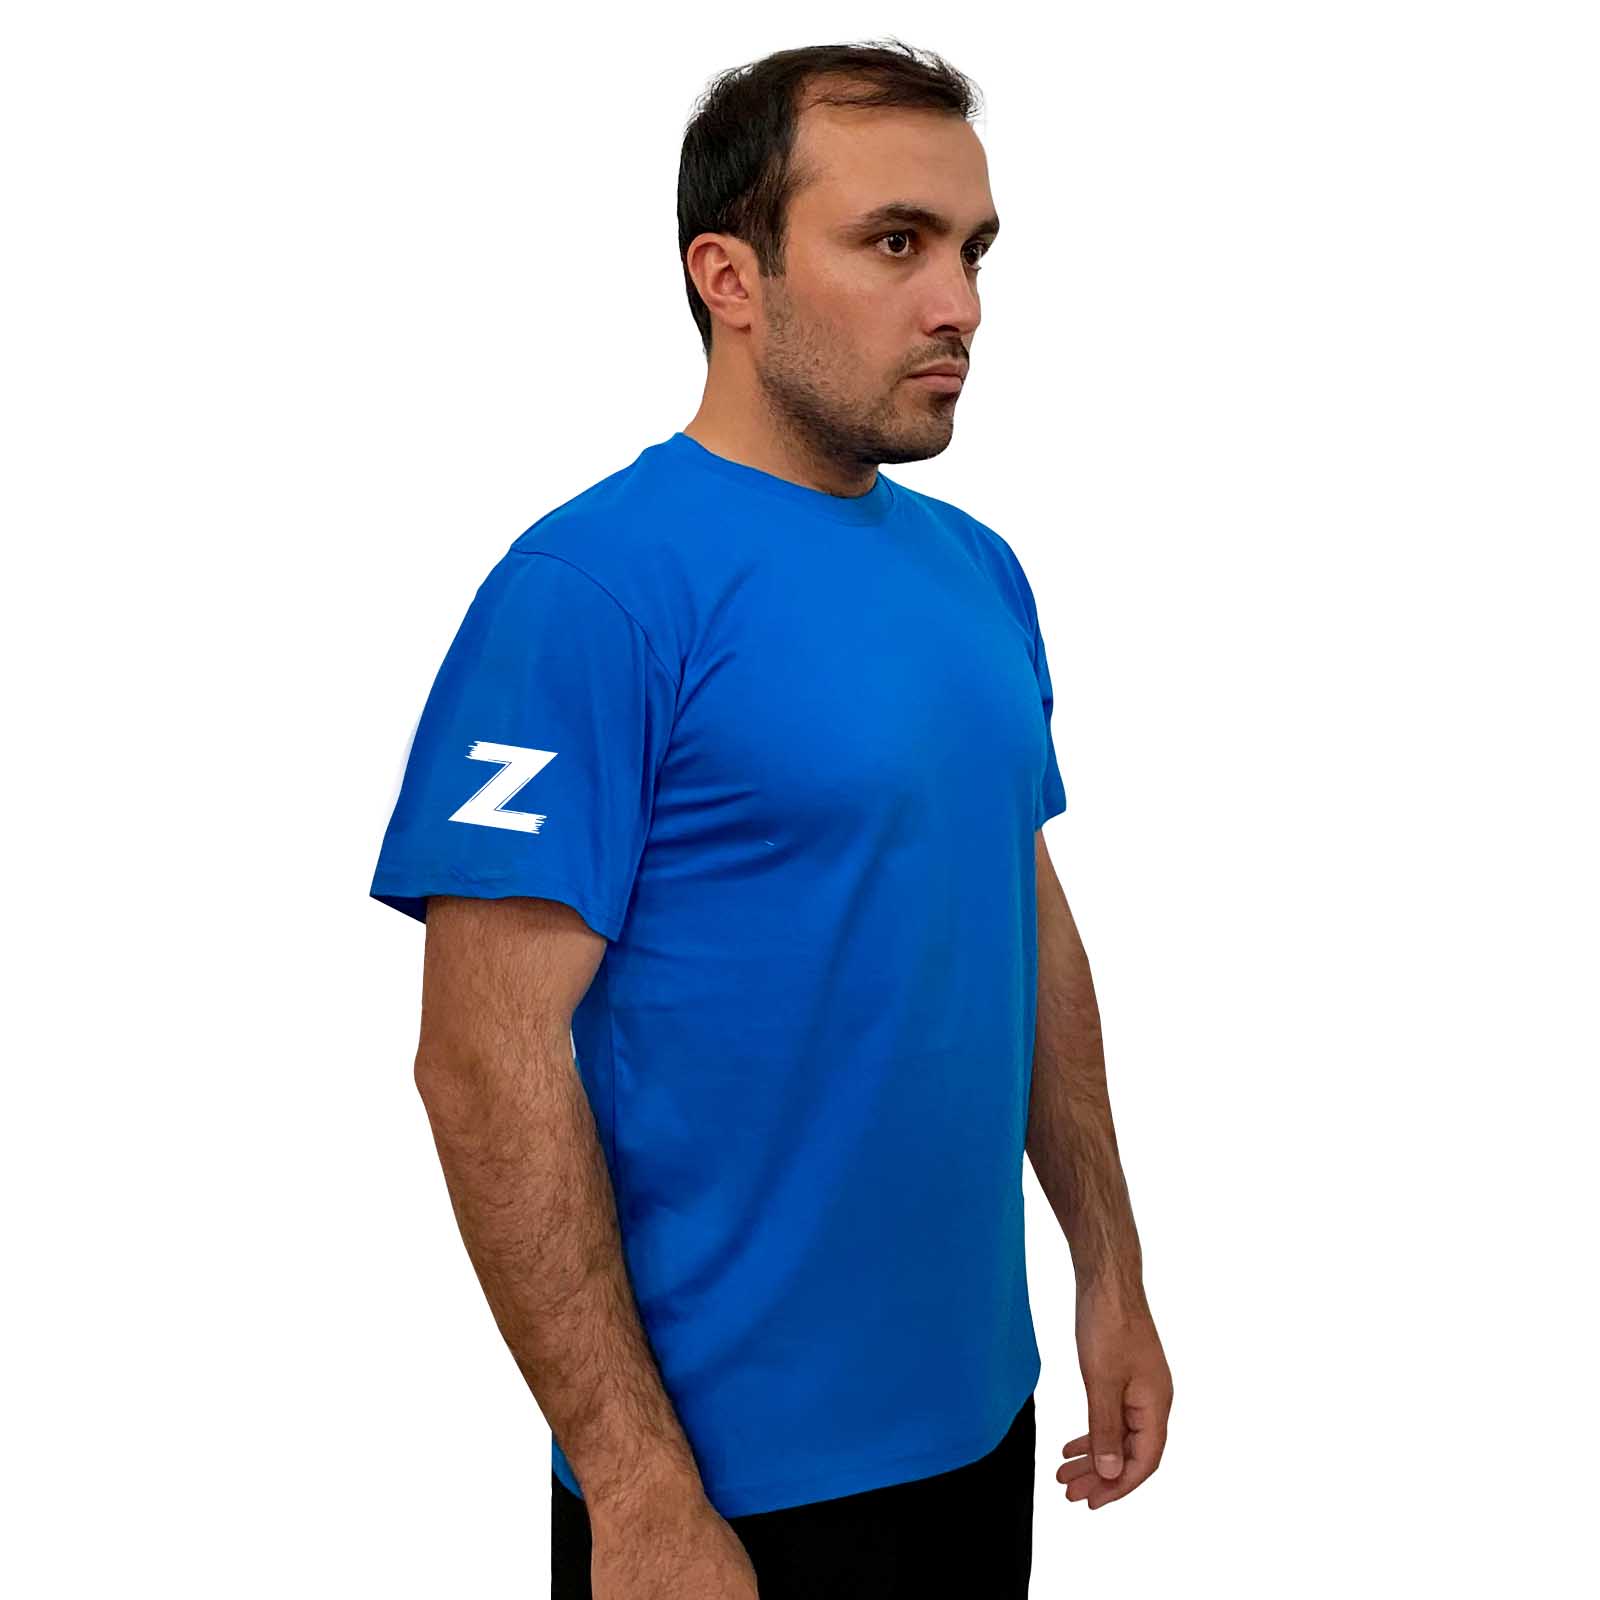 Купить хлопковую голубую футболку с литерой Z выгодно